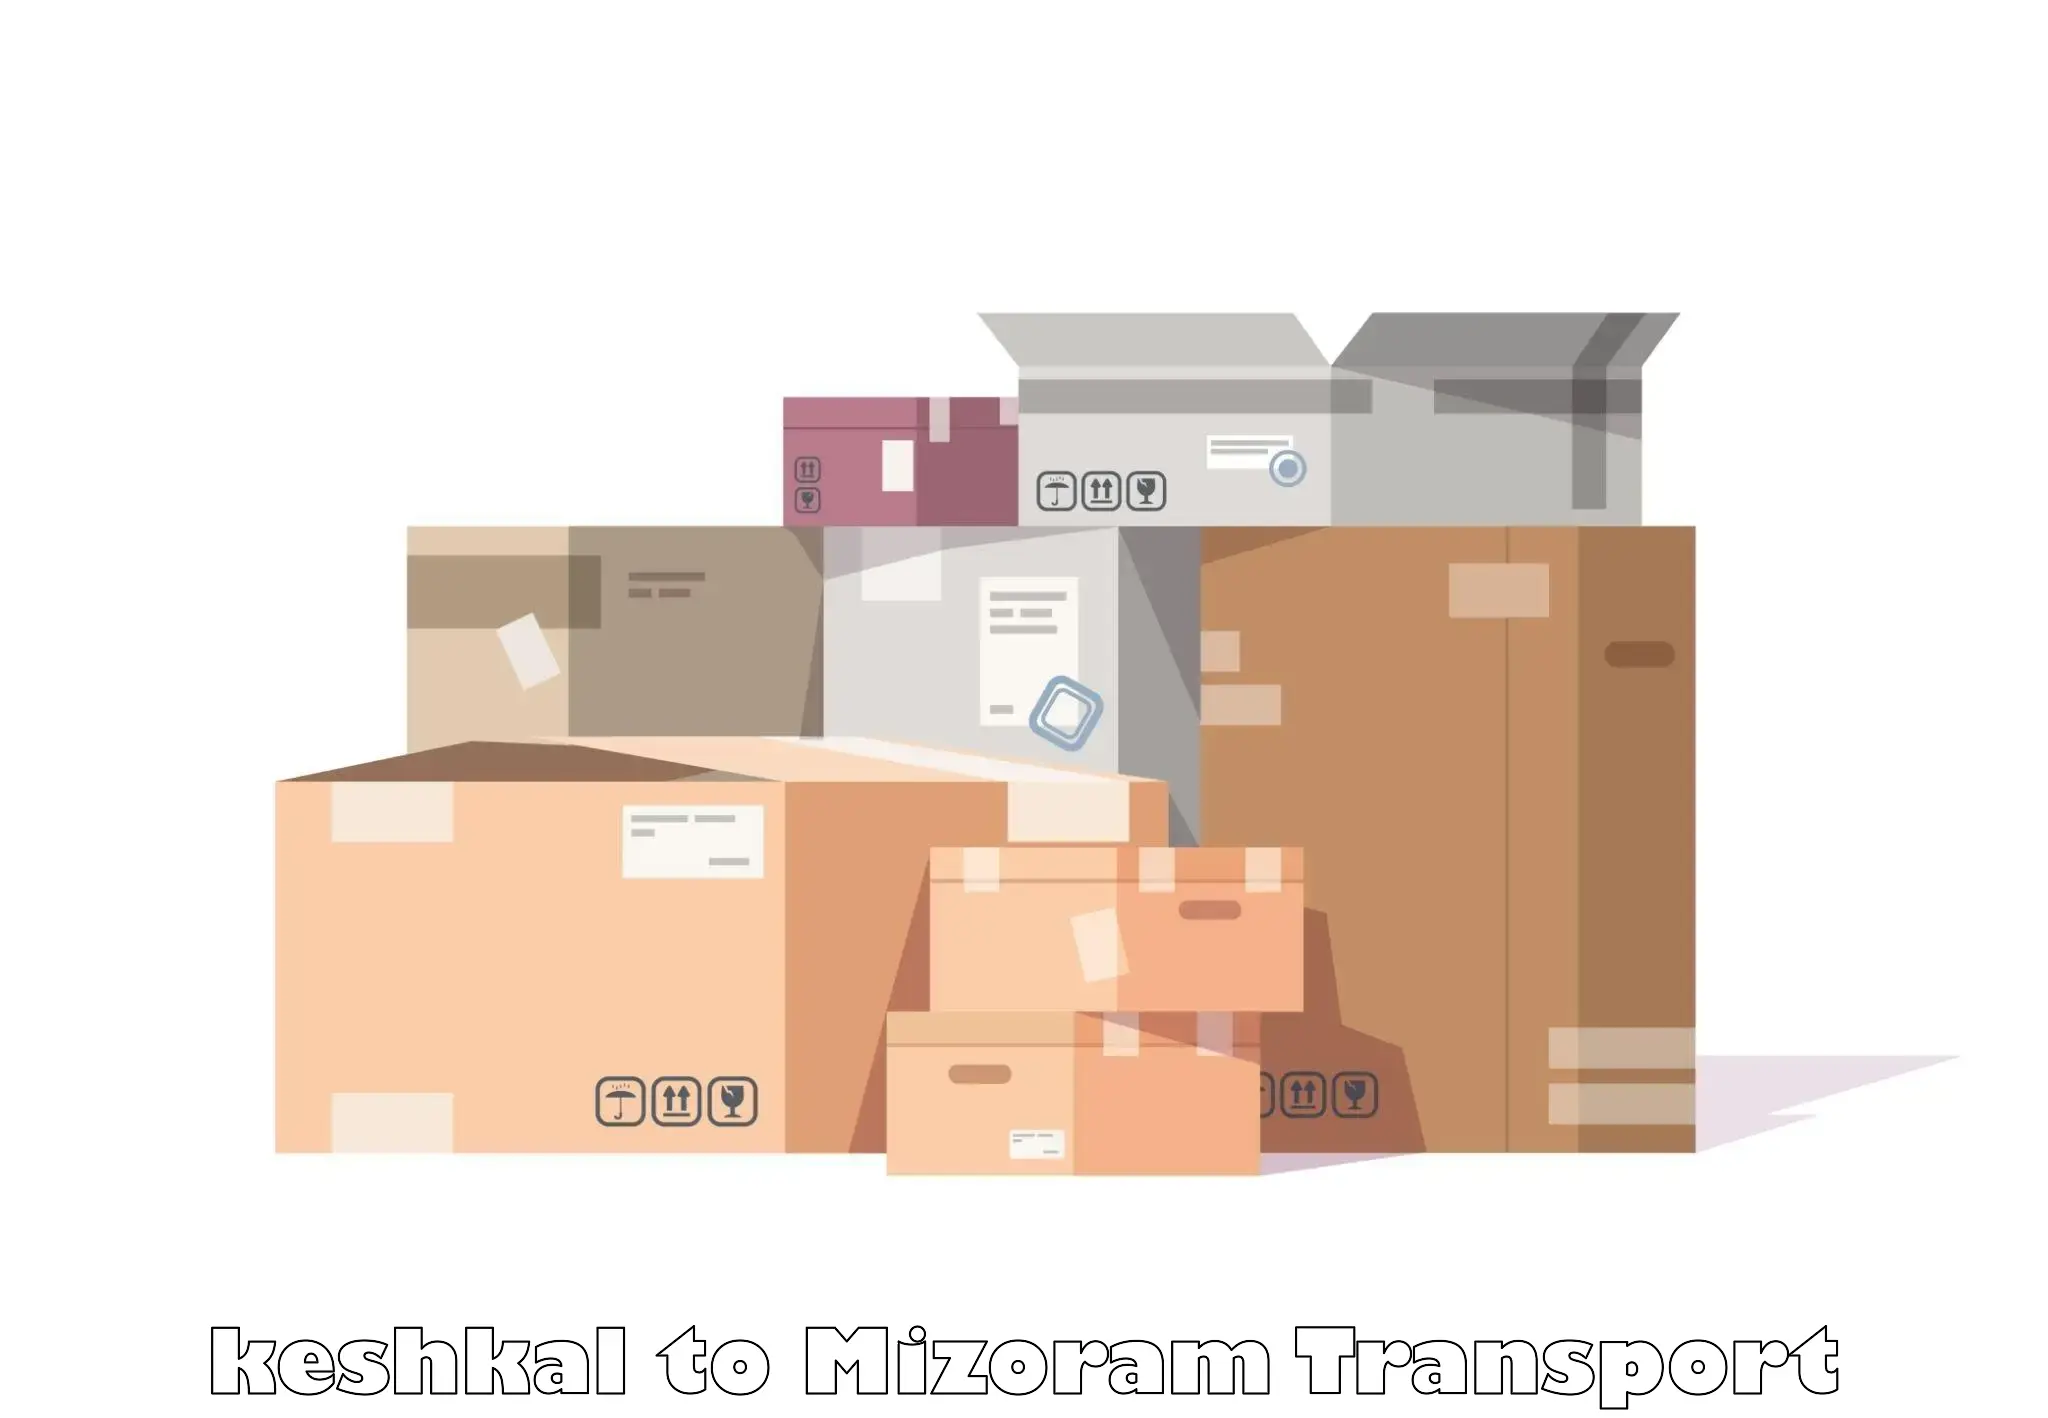 Shipping partner keshkal to Mizoram